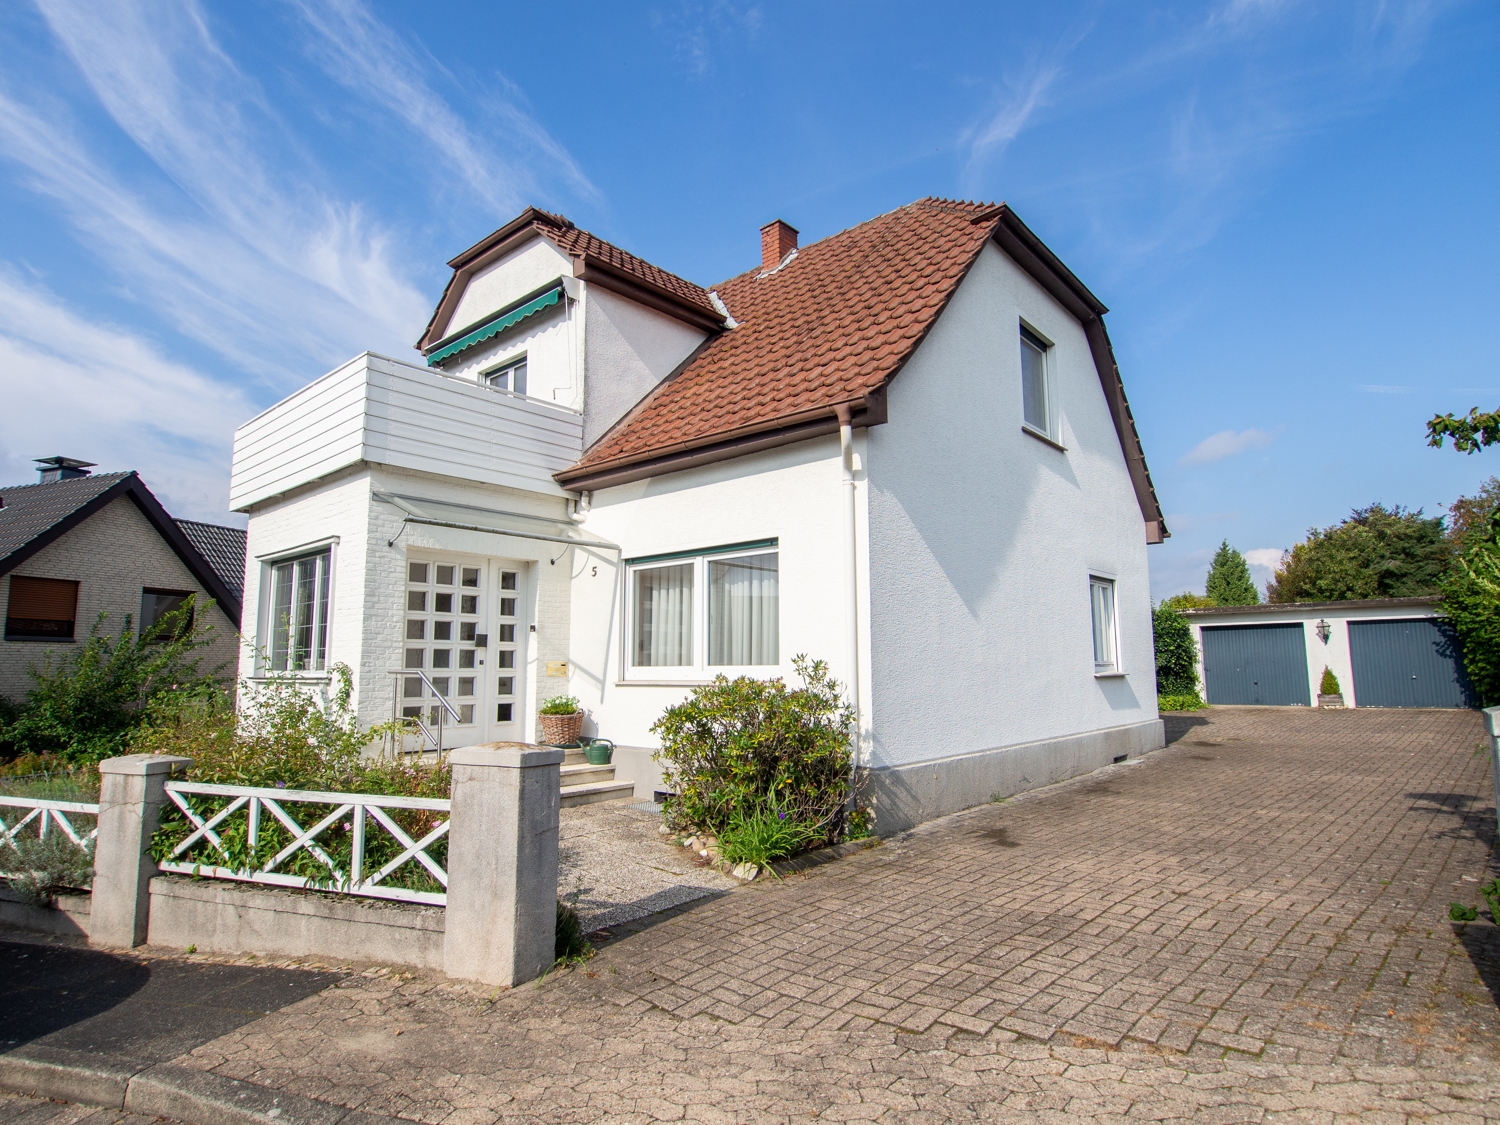 Großzügiges Wohnhaus mit wunderschönem Gartengrundstück in Hiddenhausen!